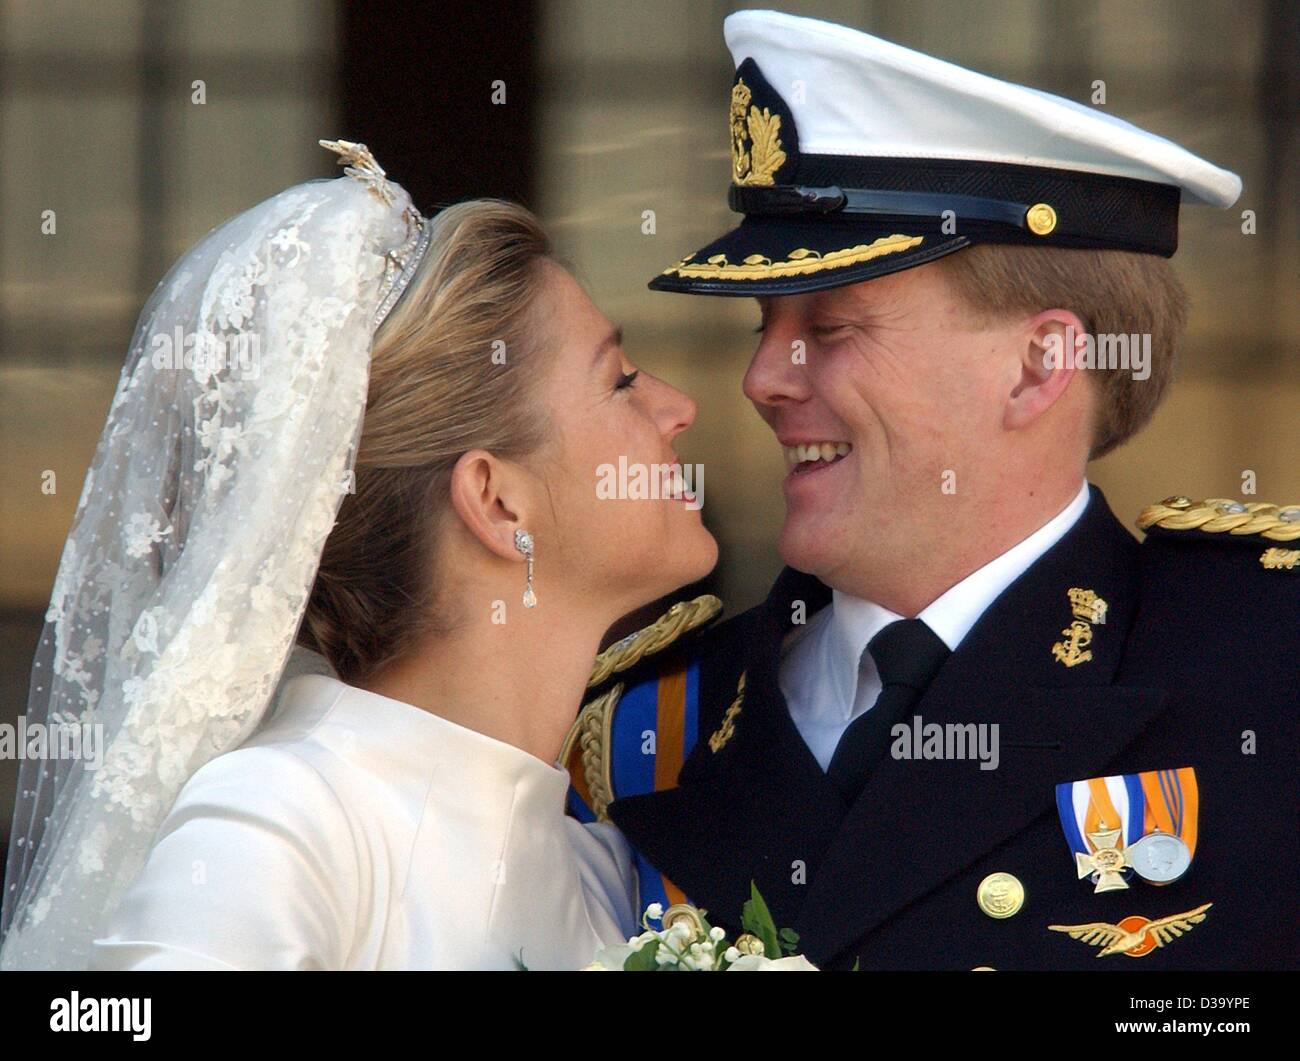 (Dpa) - königliche Hochzeit in Amsterdam: niederländischen Kronprinzen Willem-Alexander und seine Frau Prinzessin Maxima Zorreguieta auf dem Balkon des königlichen Palastes in Amsterdam nach ihrer Hochzeit, 2. Februar 2002. Stockfoto